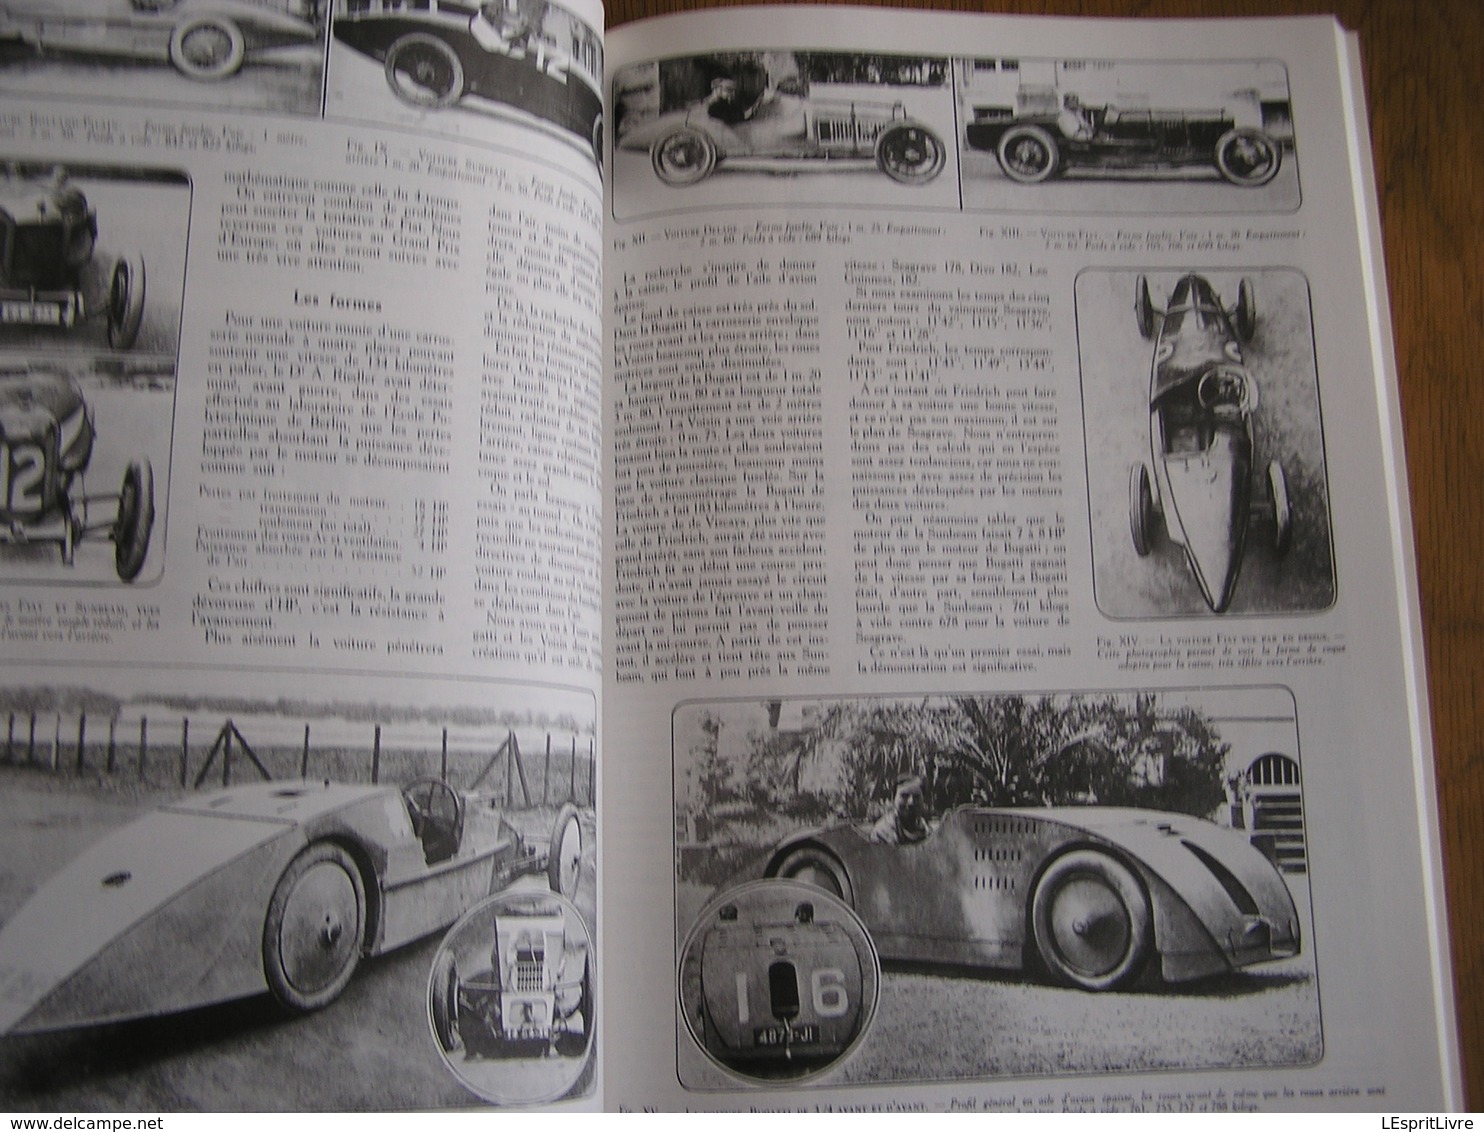 1920 1940 BUGATTI EN COURSE Régionalisme Molsheim Alsace France Automobile Grand Prix Monaco 24 H Le Mans Miramas Auto